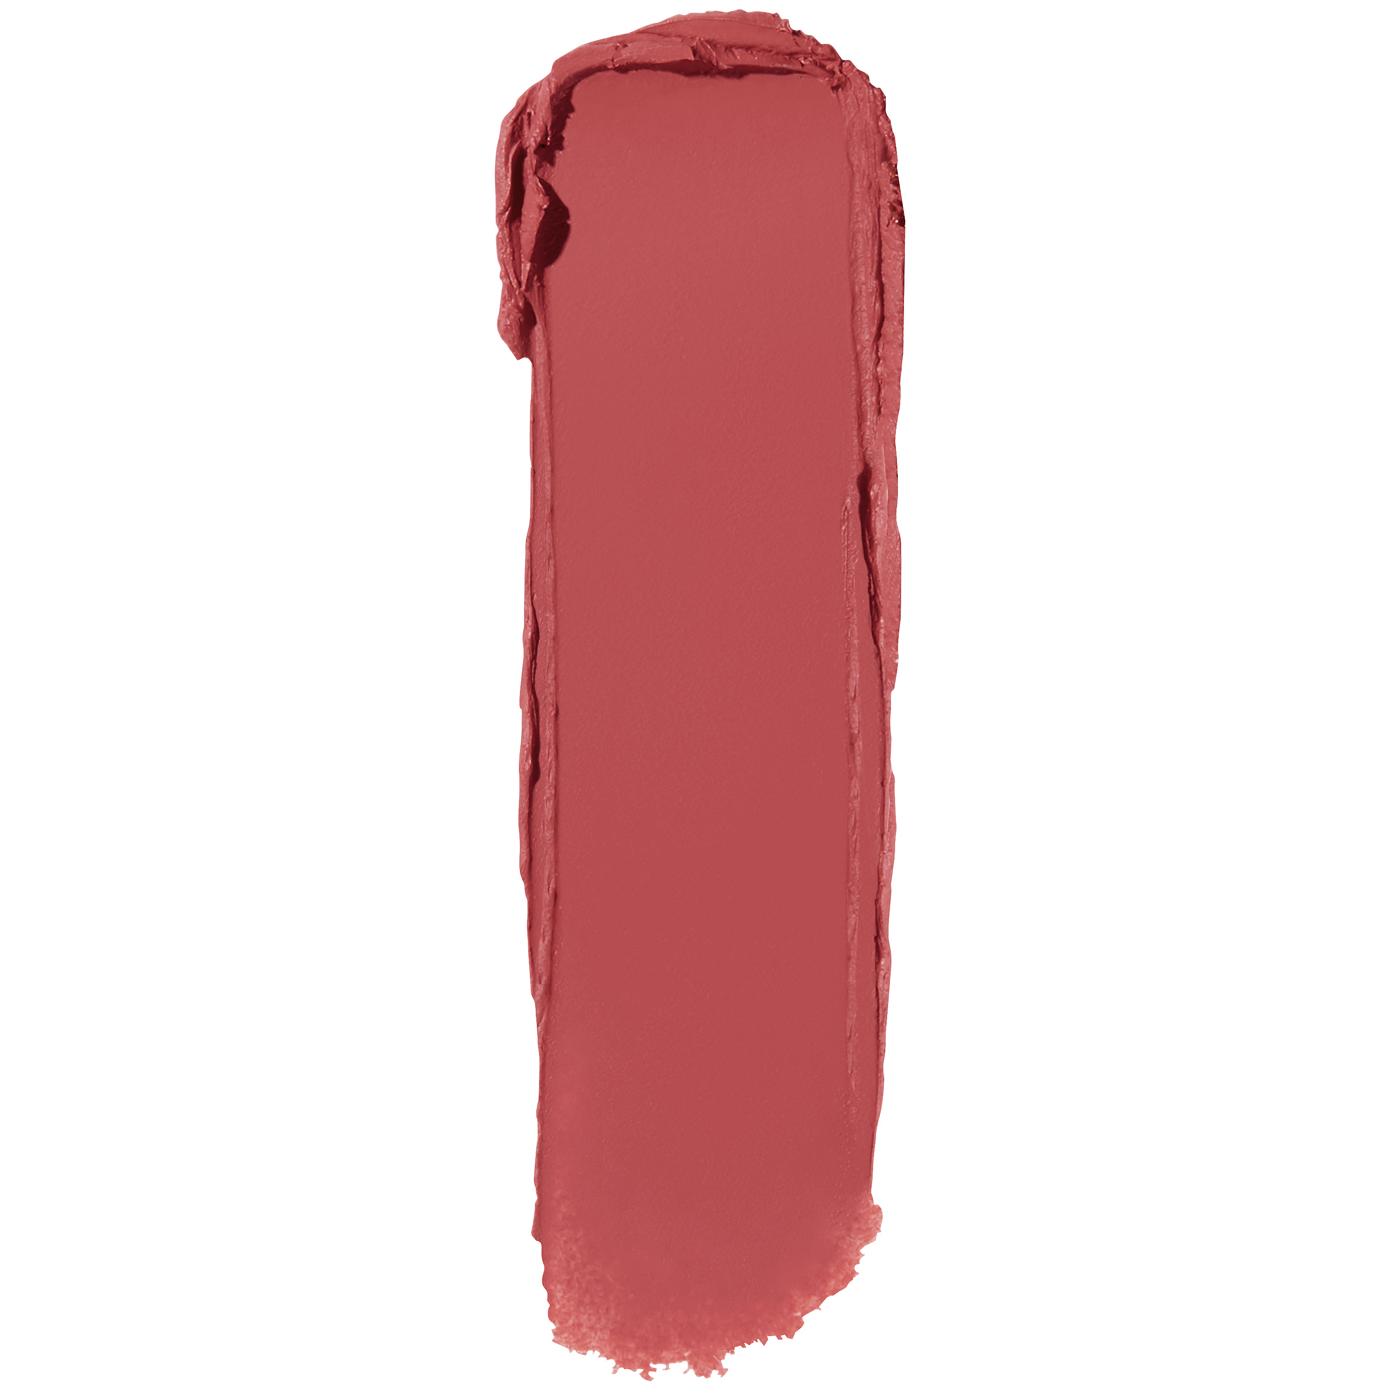 Maybelline Color Sensational Ultimatte Lipstick - More Blush; image 2 of 3